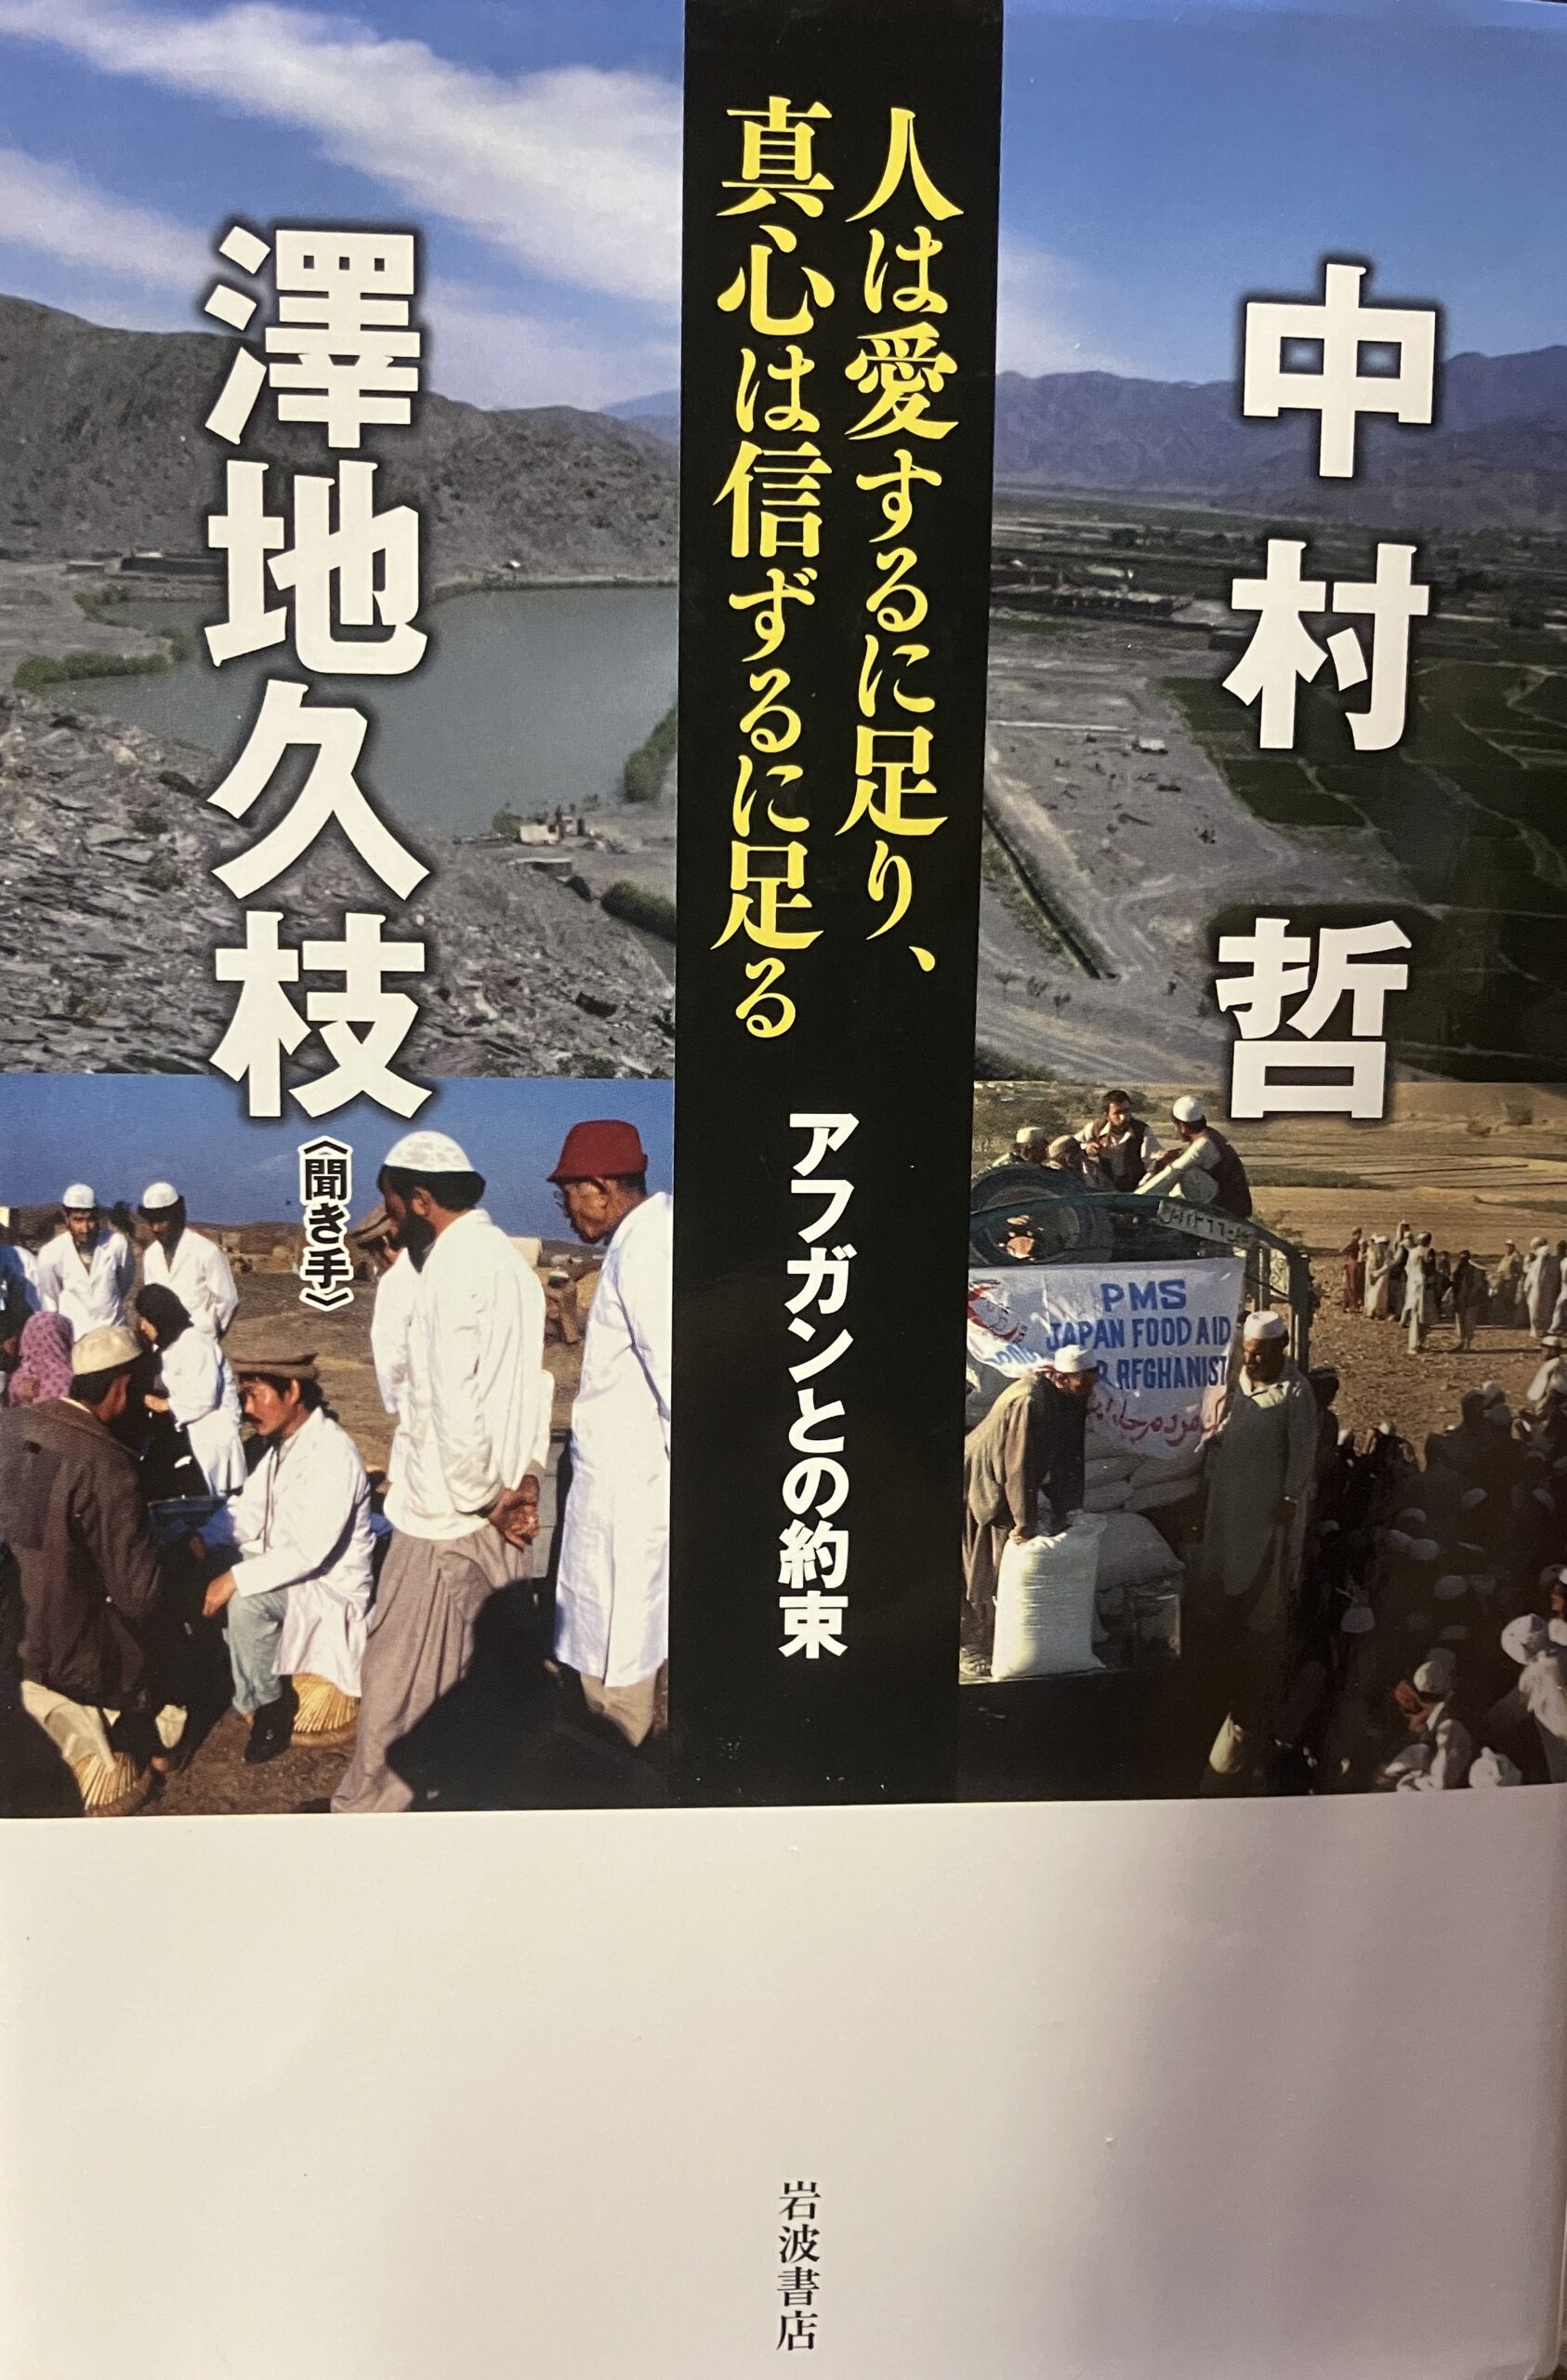 中村哲医師特別サイト子ども向けを政策している西日本新聞の記事写真